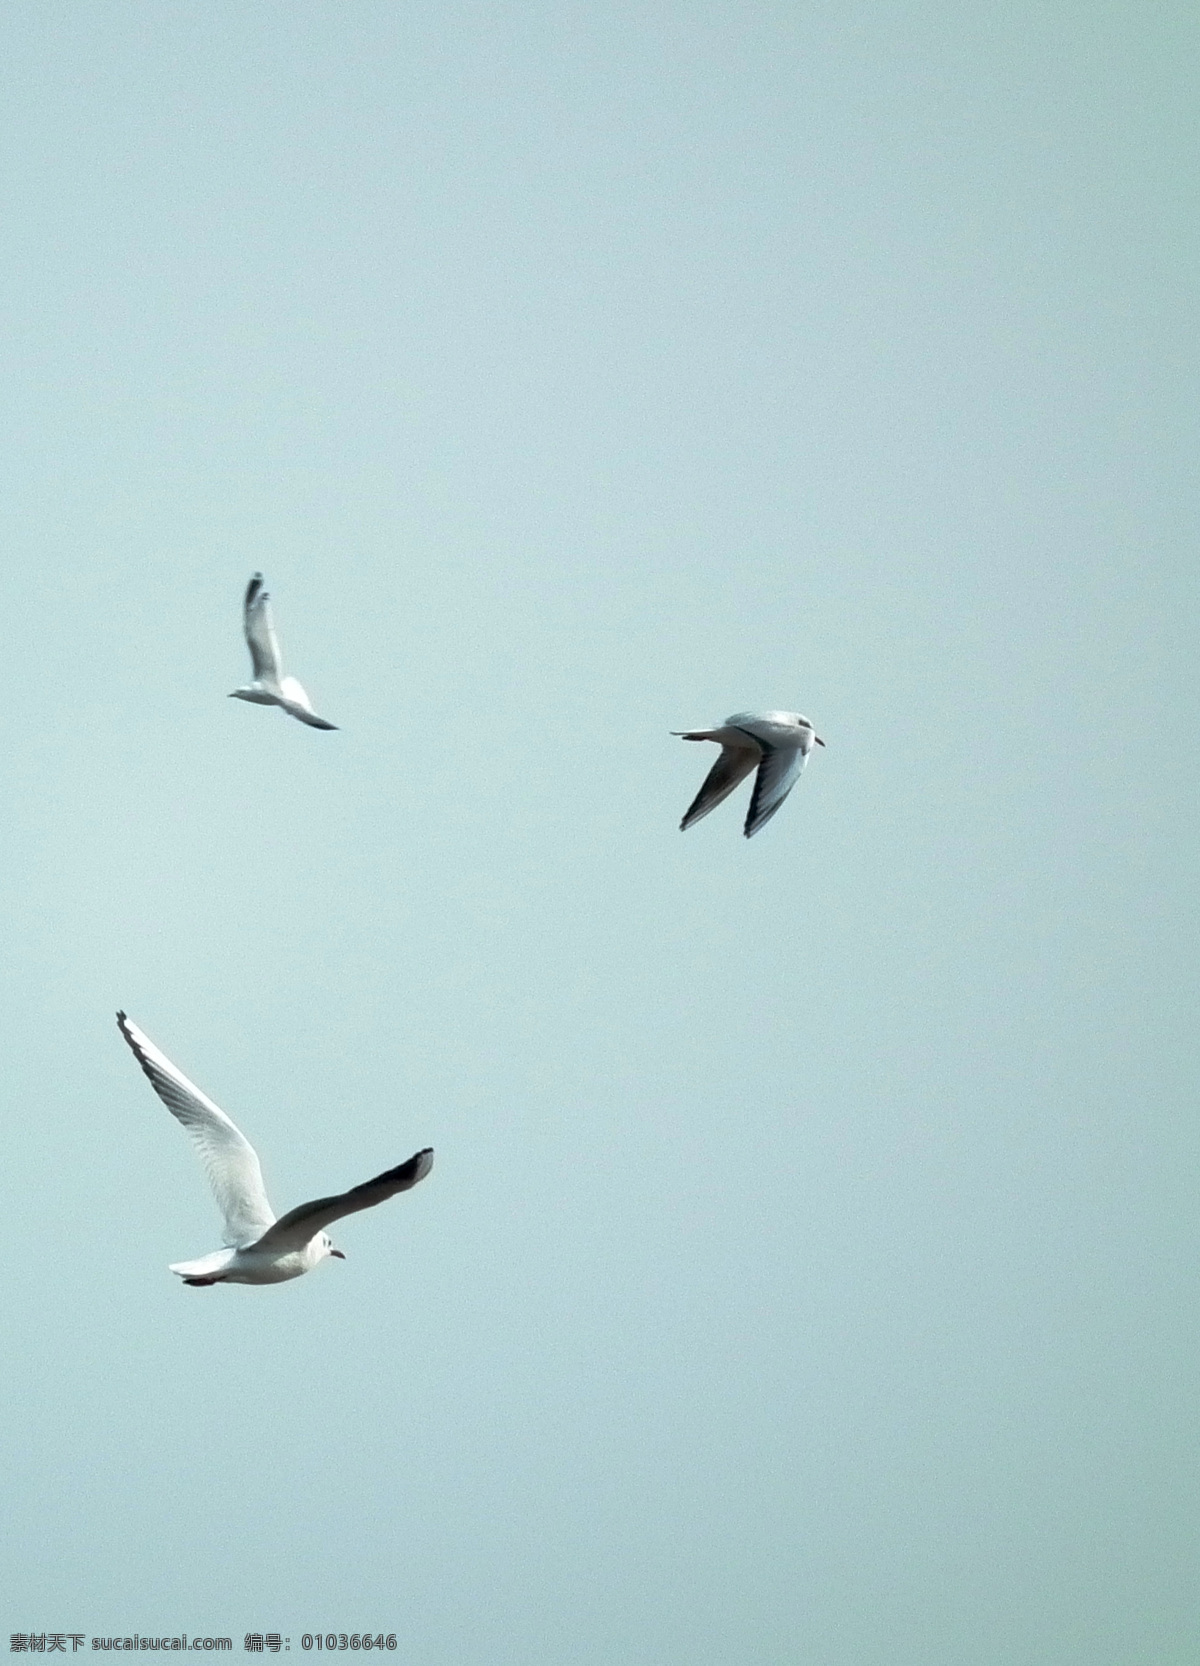 海鸥飞翔 飞翔 海鸥 天空 飞翔的鸟 展翅高飞 鸟类 生物世界